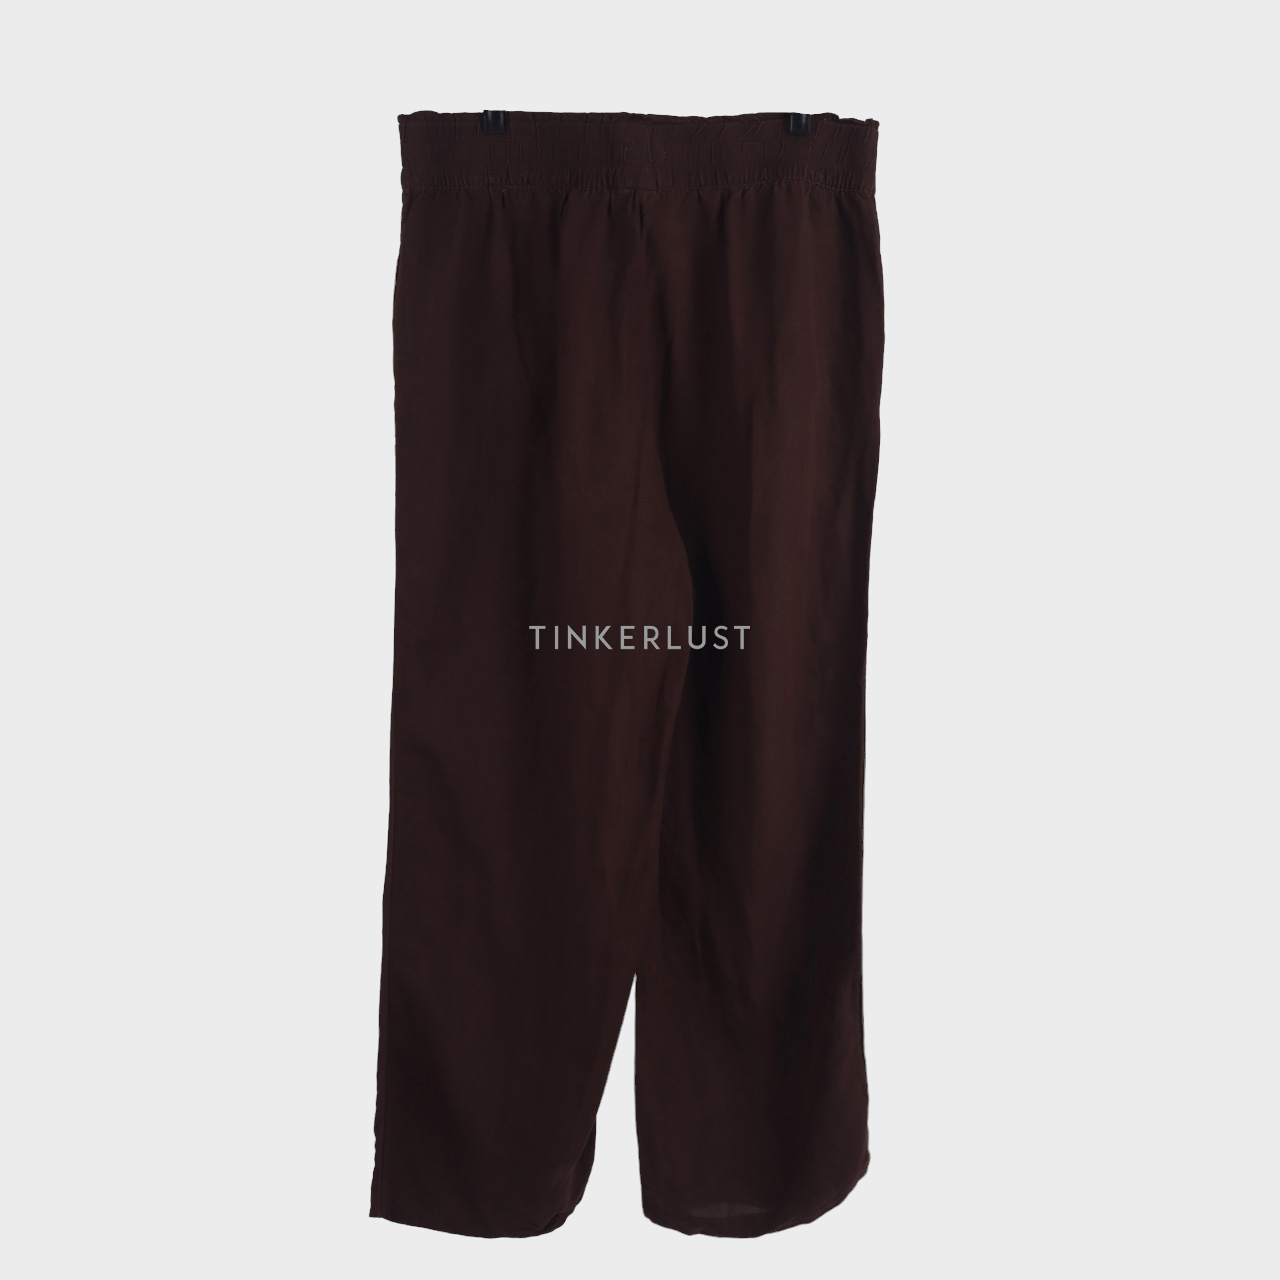 H&M Dark Brown Long Pants